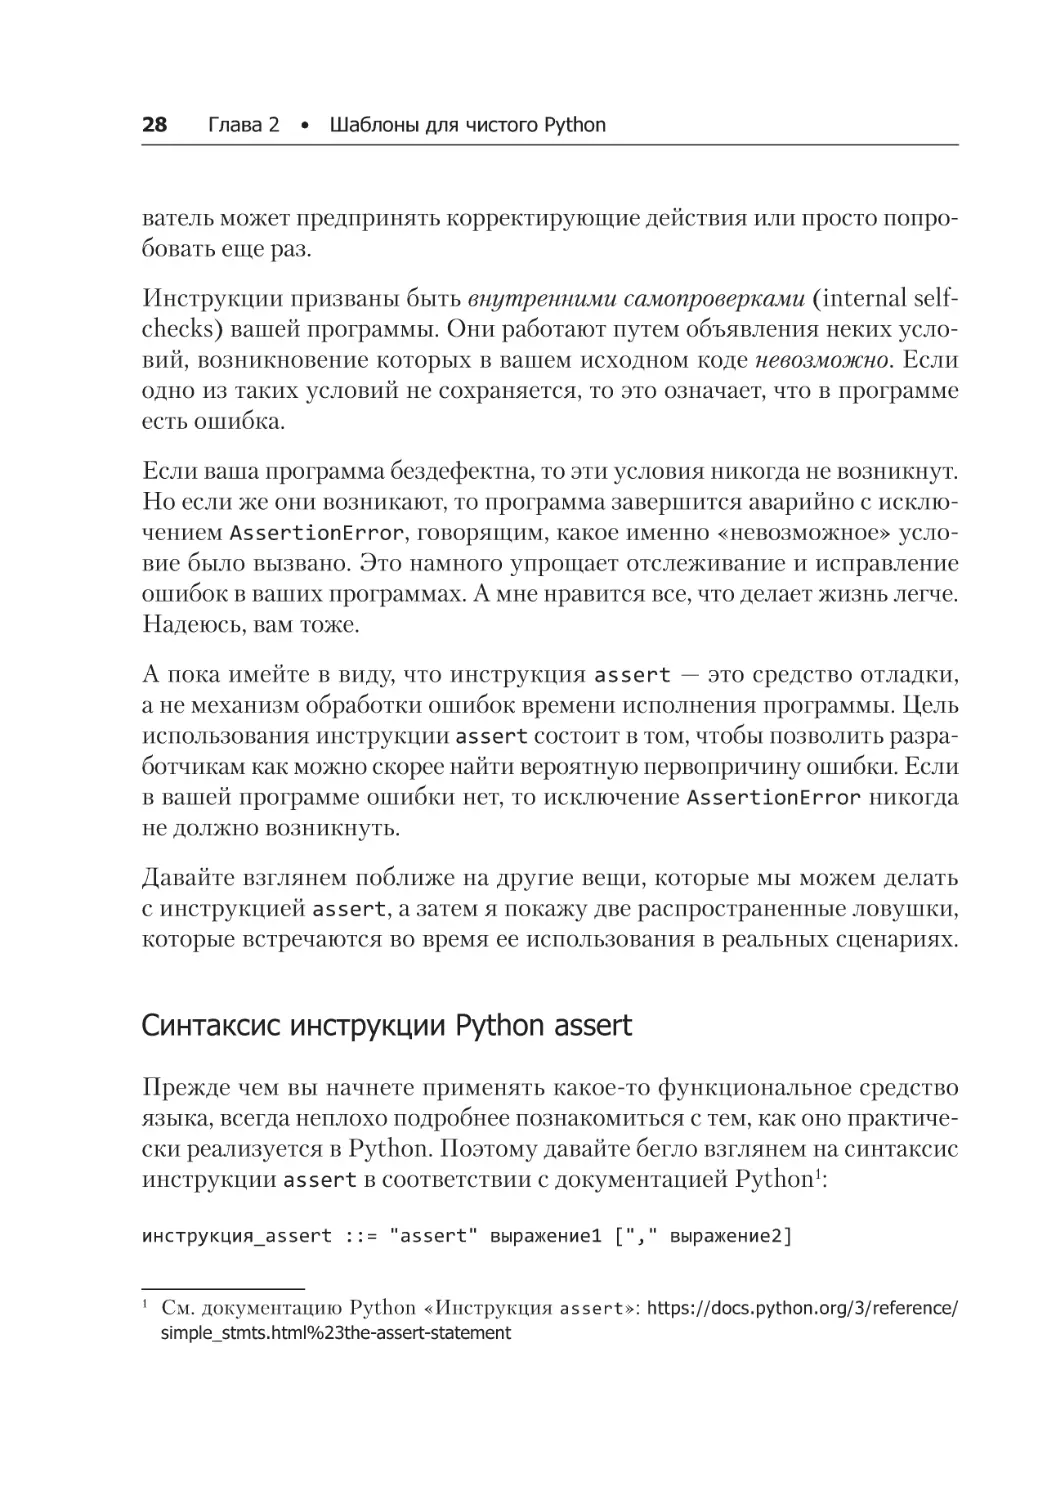 Синтаксис инструкции Python assert